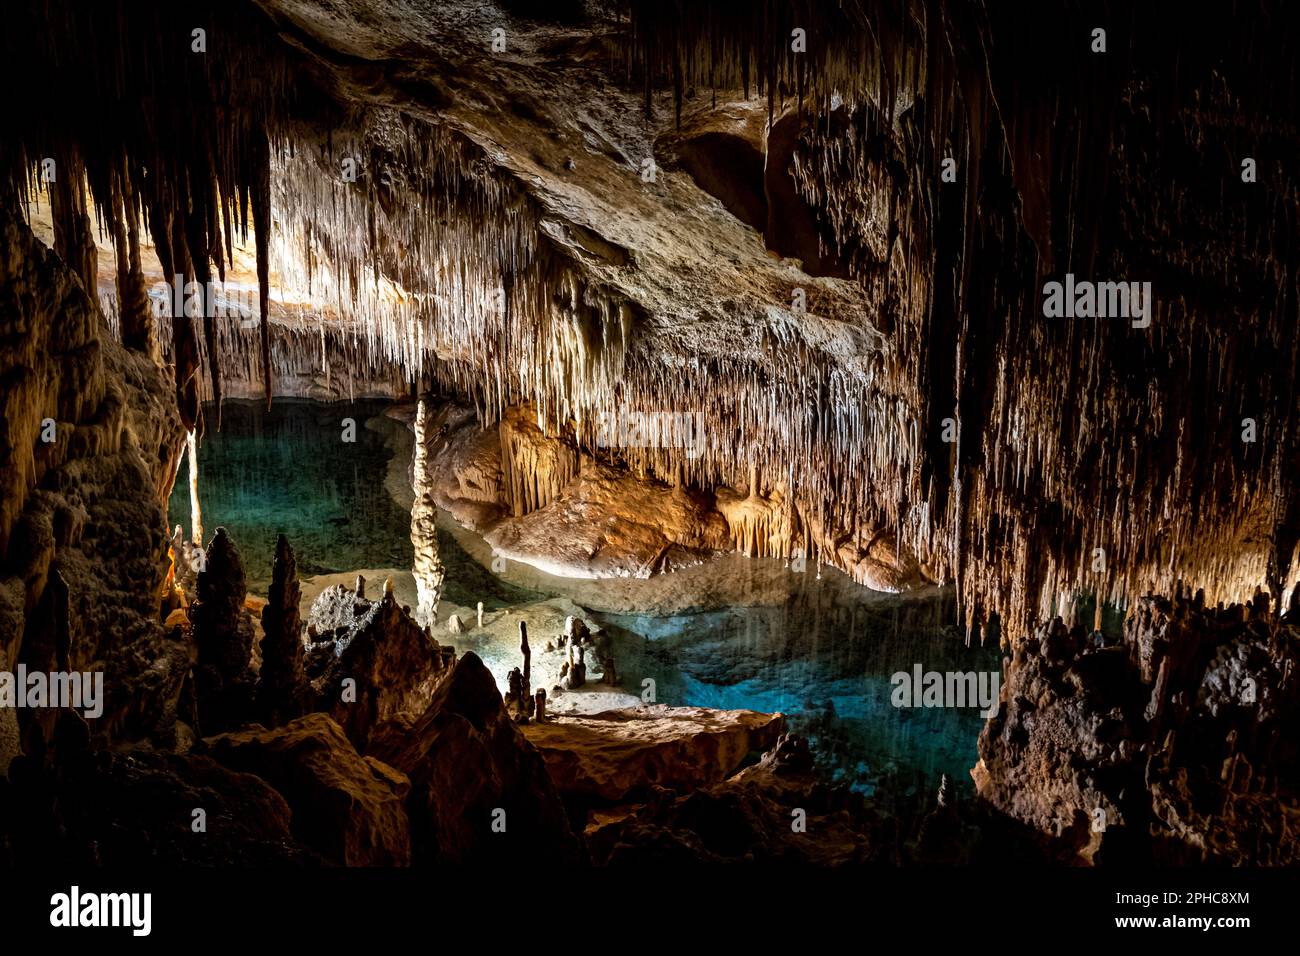 Lagon souterrain mystérieux avec eau bleue, stalagmites imposants et stalactites suspendues illuminés à l'intérieur de la majestueuse caverne sombre Cuevas del Drach Banque D'Images